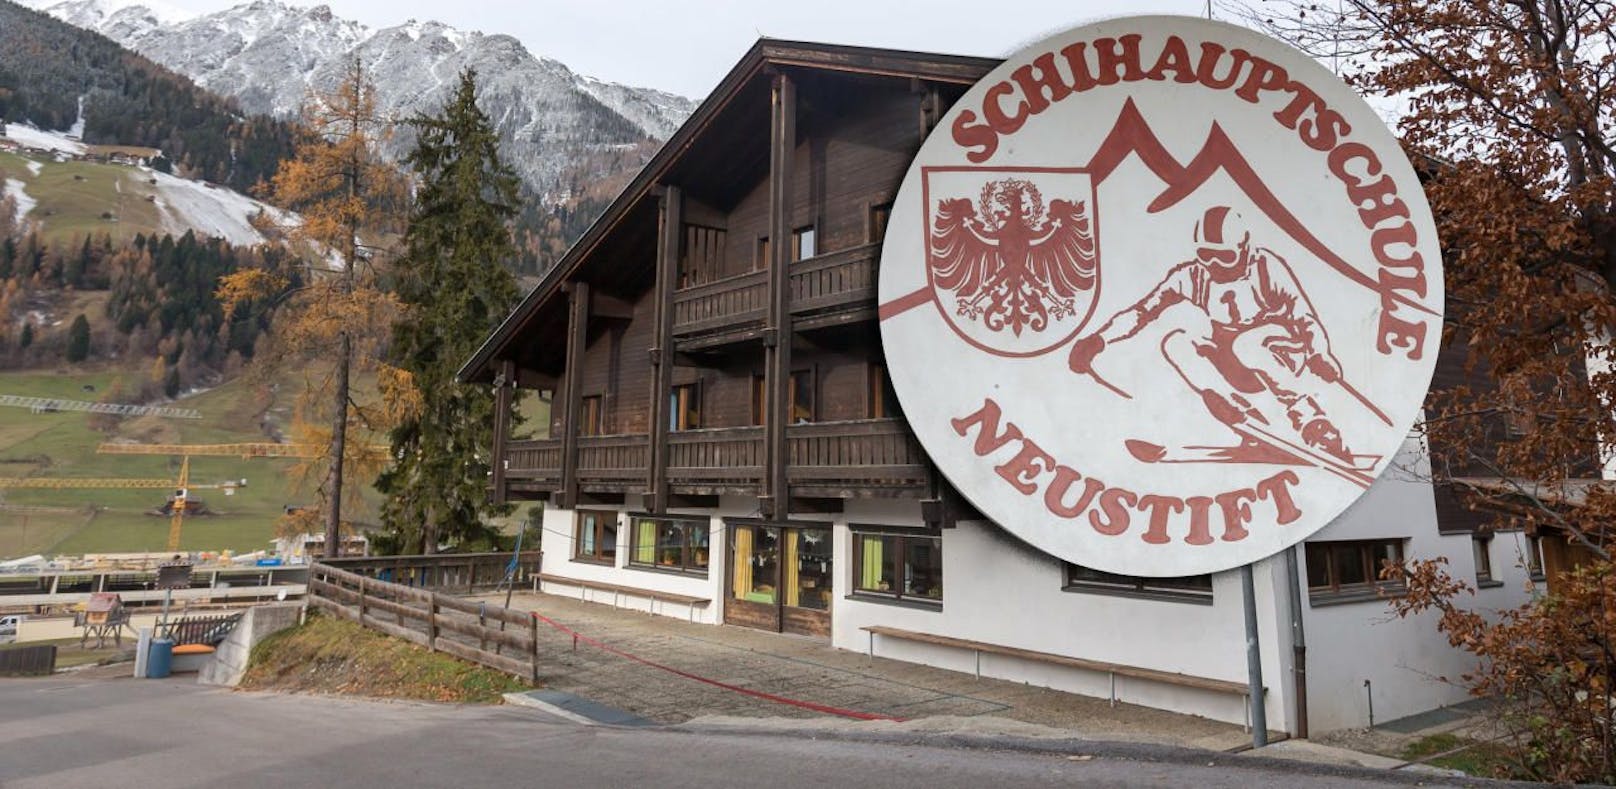 Schon drei Fälle bei Tiroler Landes-Hotline gemeldet